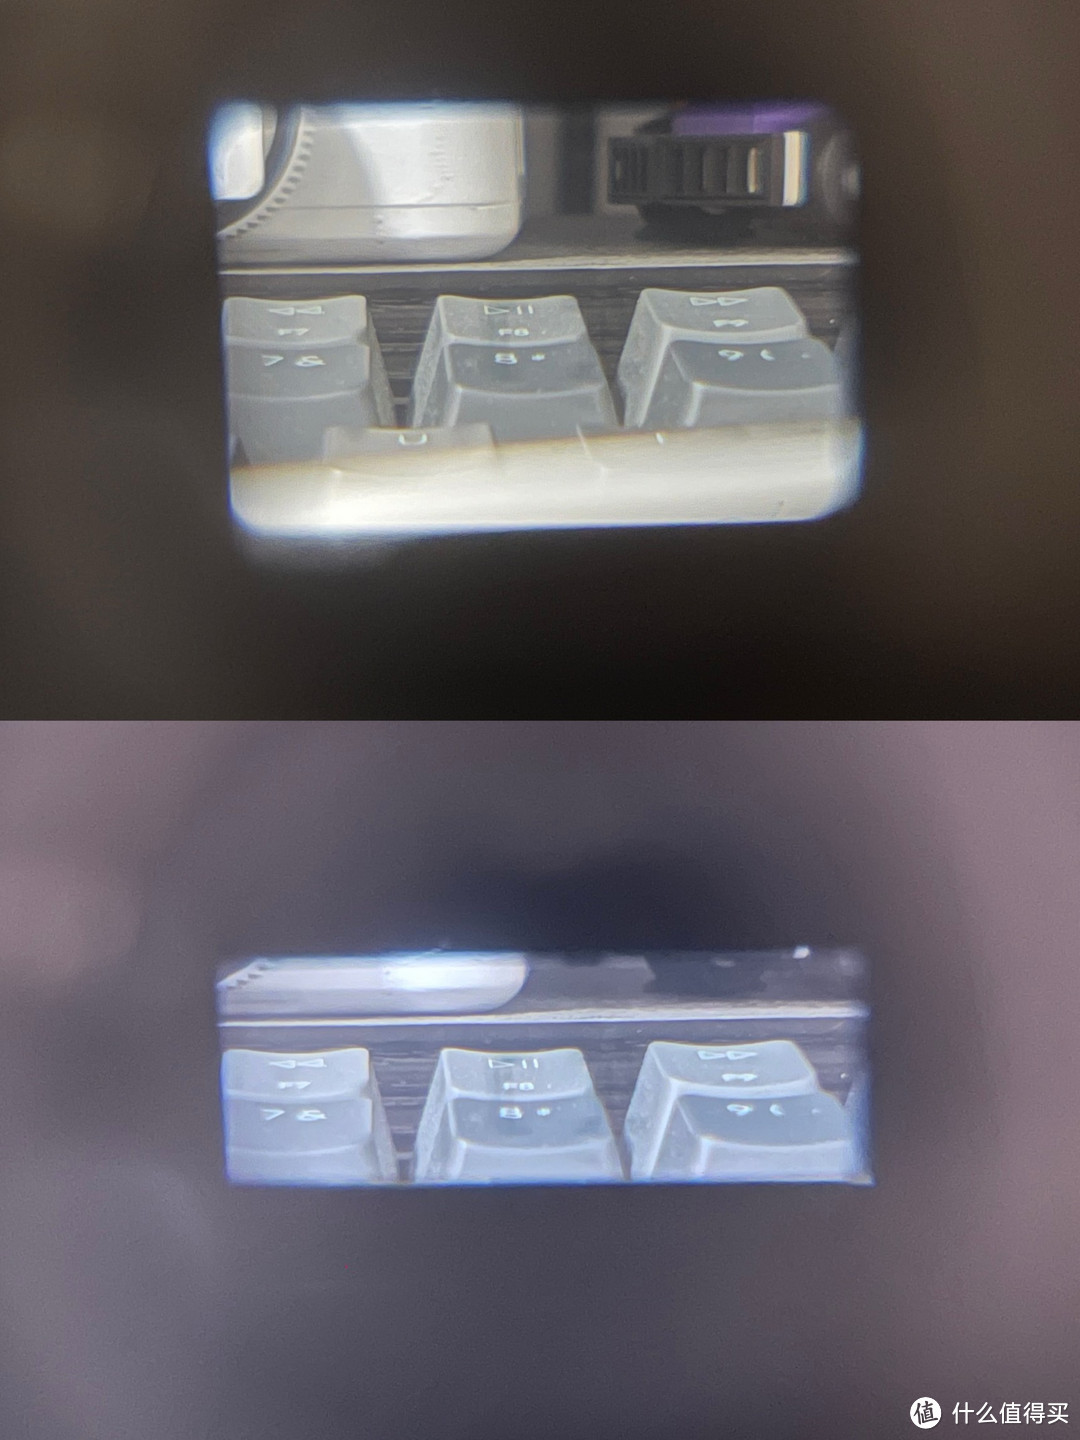 94年的富士傻瓜胶片机，38-115mm大变焦镜头用起来是真的爽